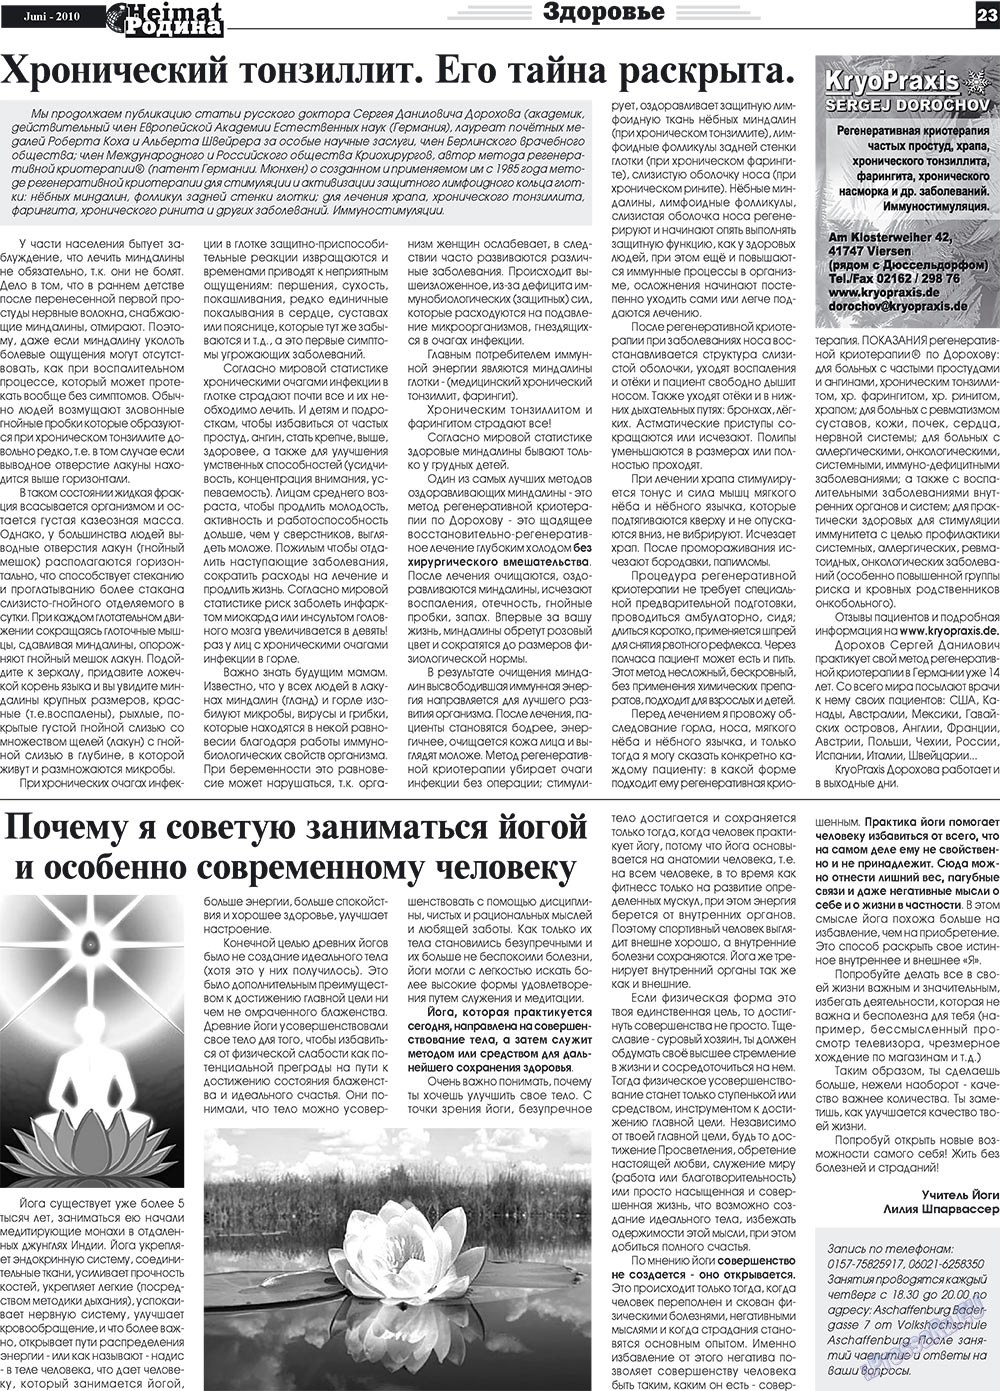 Heimat-Родина (газета). 2010 год, номер 6, стр. 23